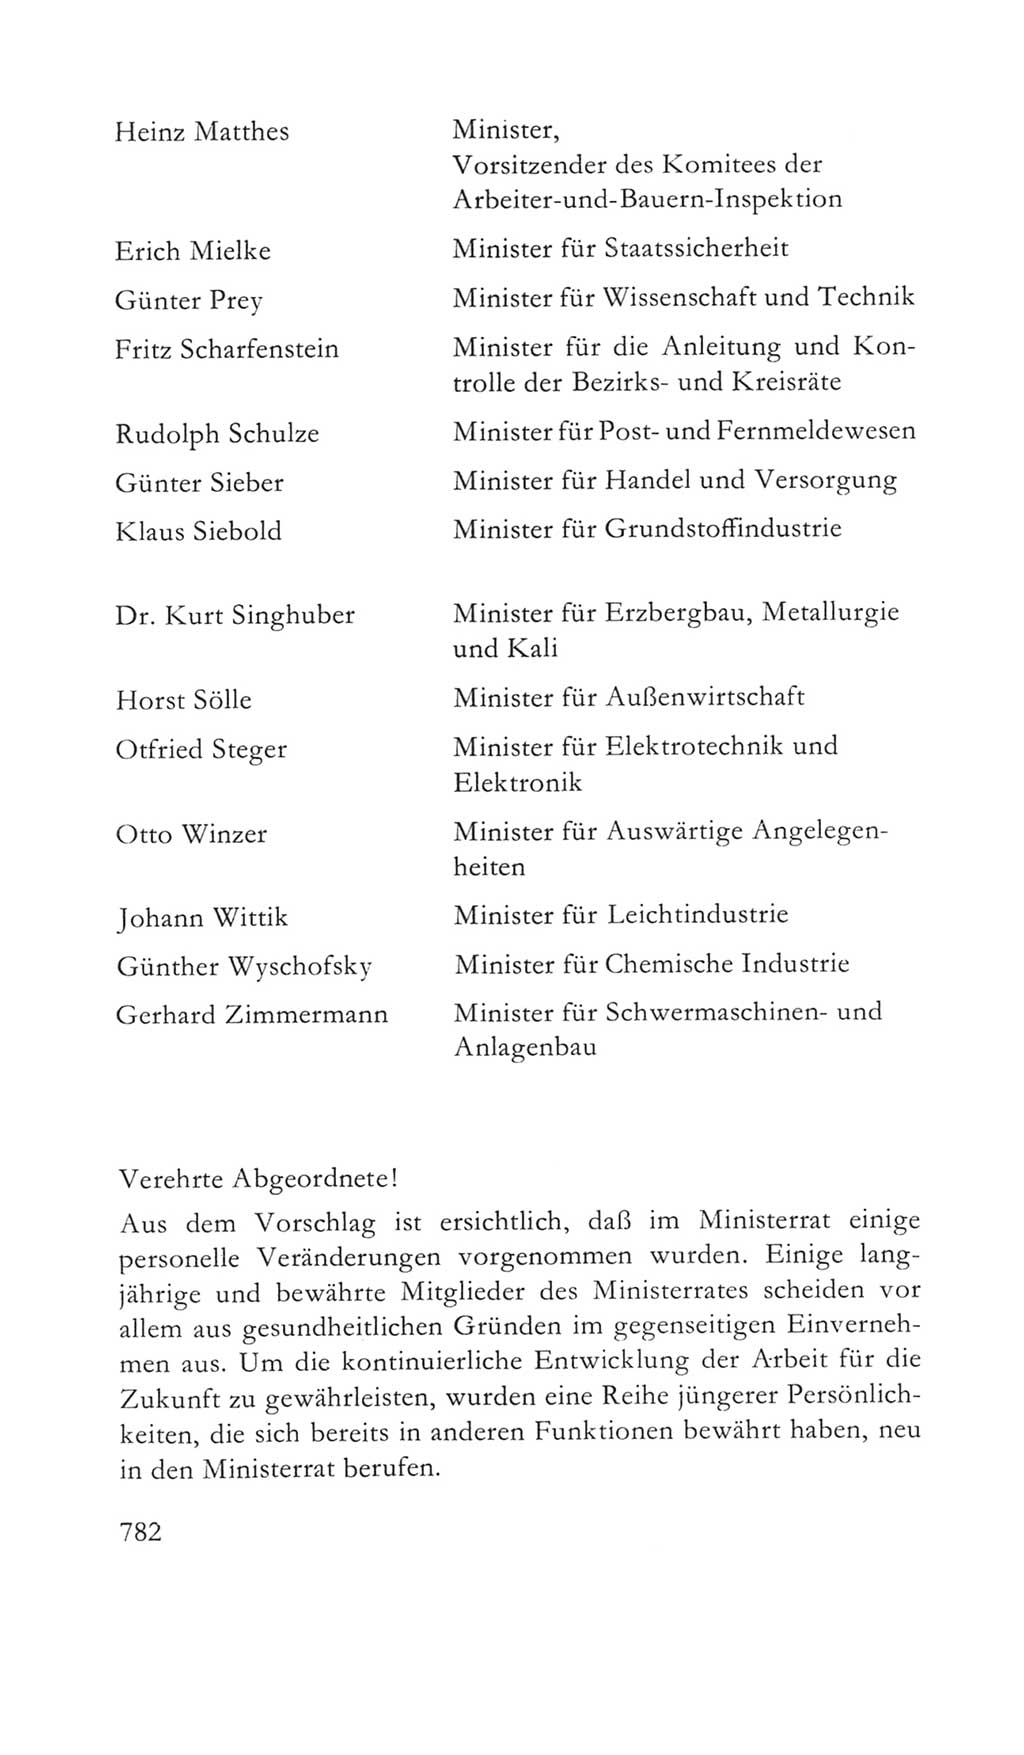 Volkskammer (VK) der Deutschen Demokratischen Republik (DDR) 5. Wahlperiode 1967-1971, Seite 782 (VK. DDR 5. WP. 1967-1971, S. 782)